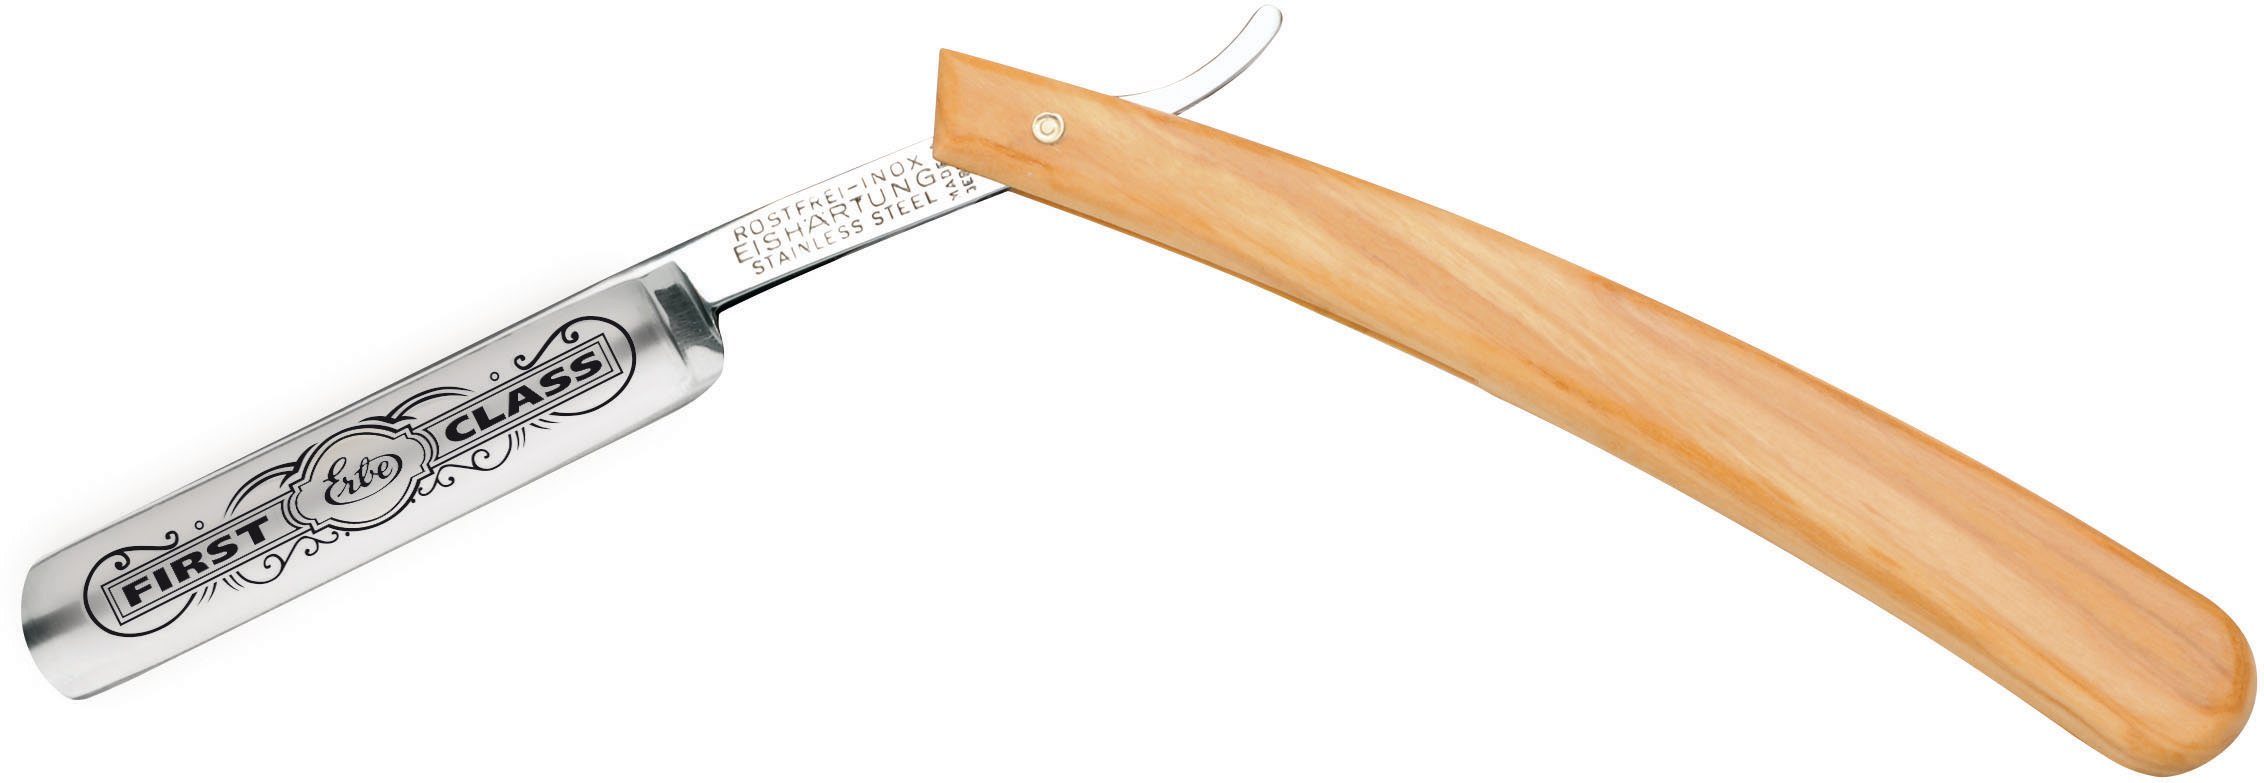 Höhepunkt der Popularität ERBE Rasiermesser Qualitäts-Rasiermesser mit Olivenholz-Griff